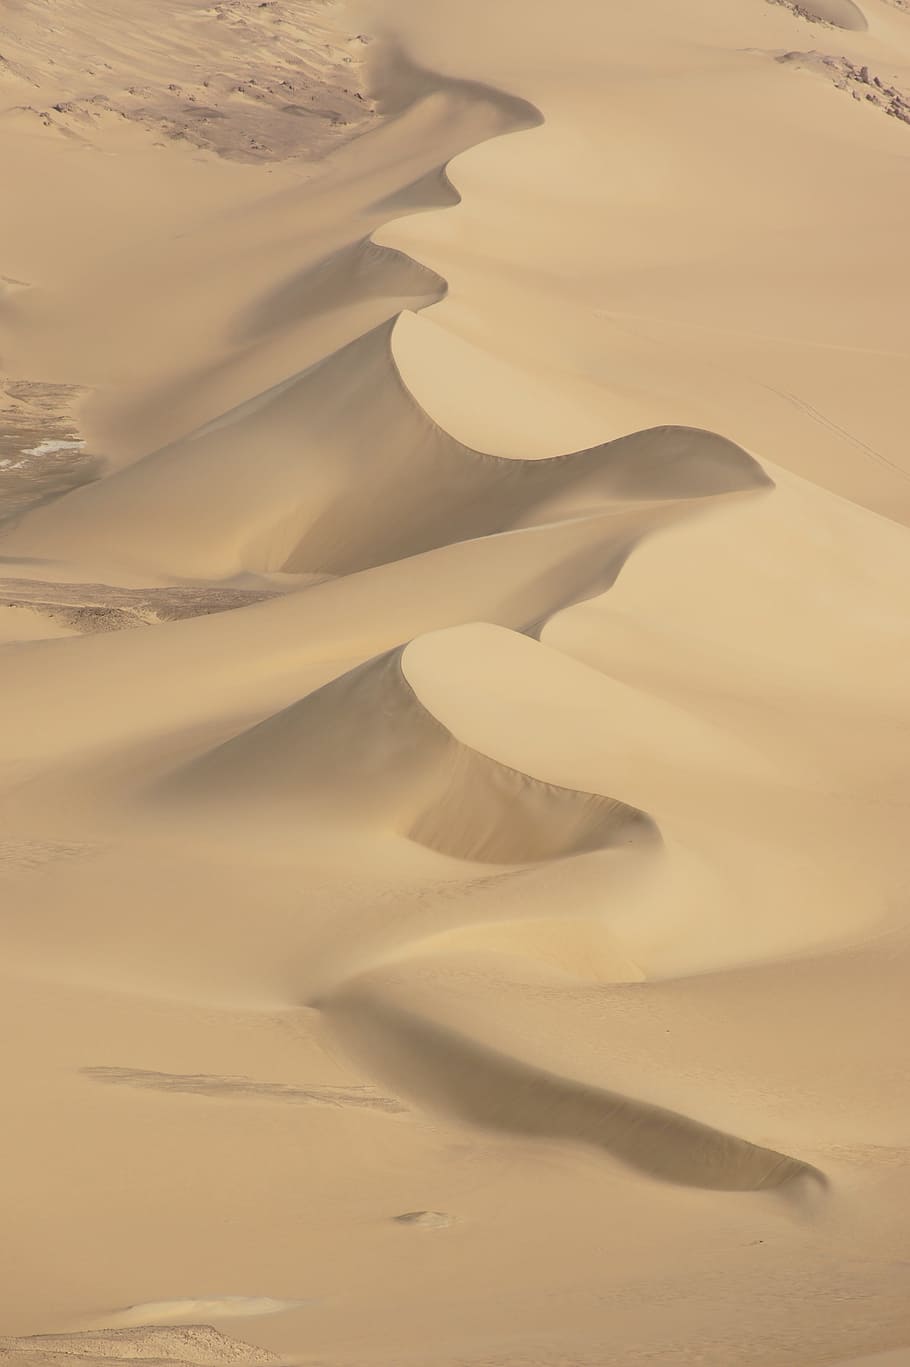 Desert, Egypt, Sand, Africa, white desert, sahara, sand Dune, nature, dry, wave Pattern